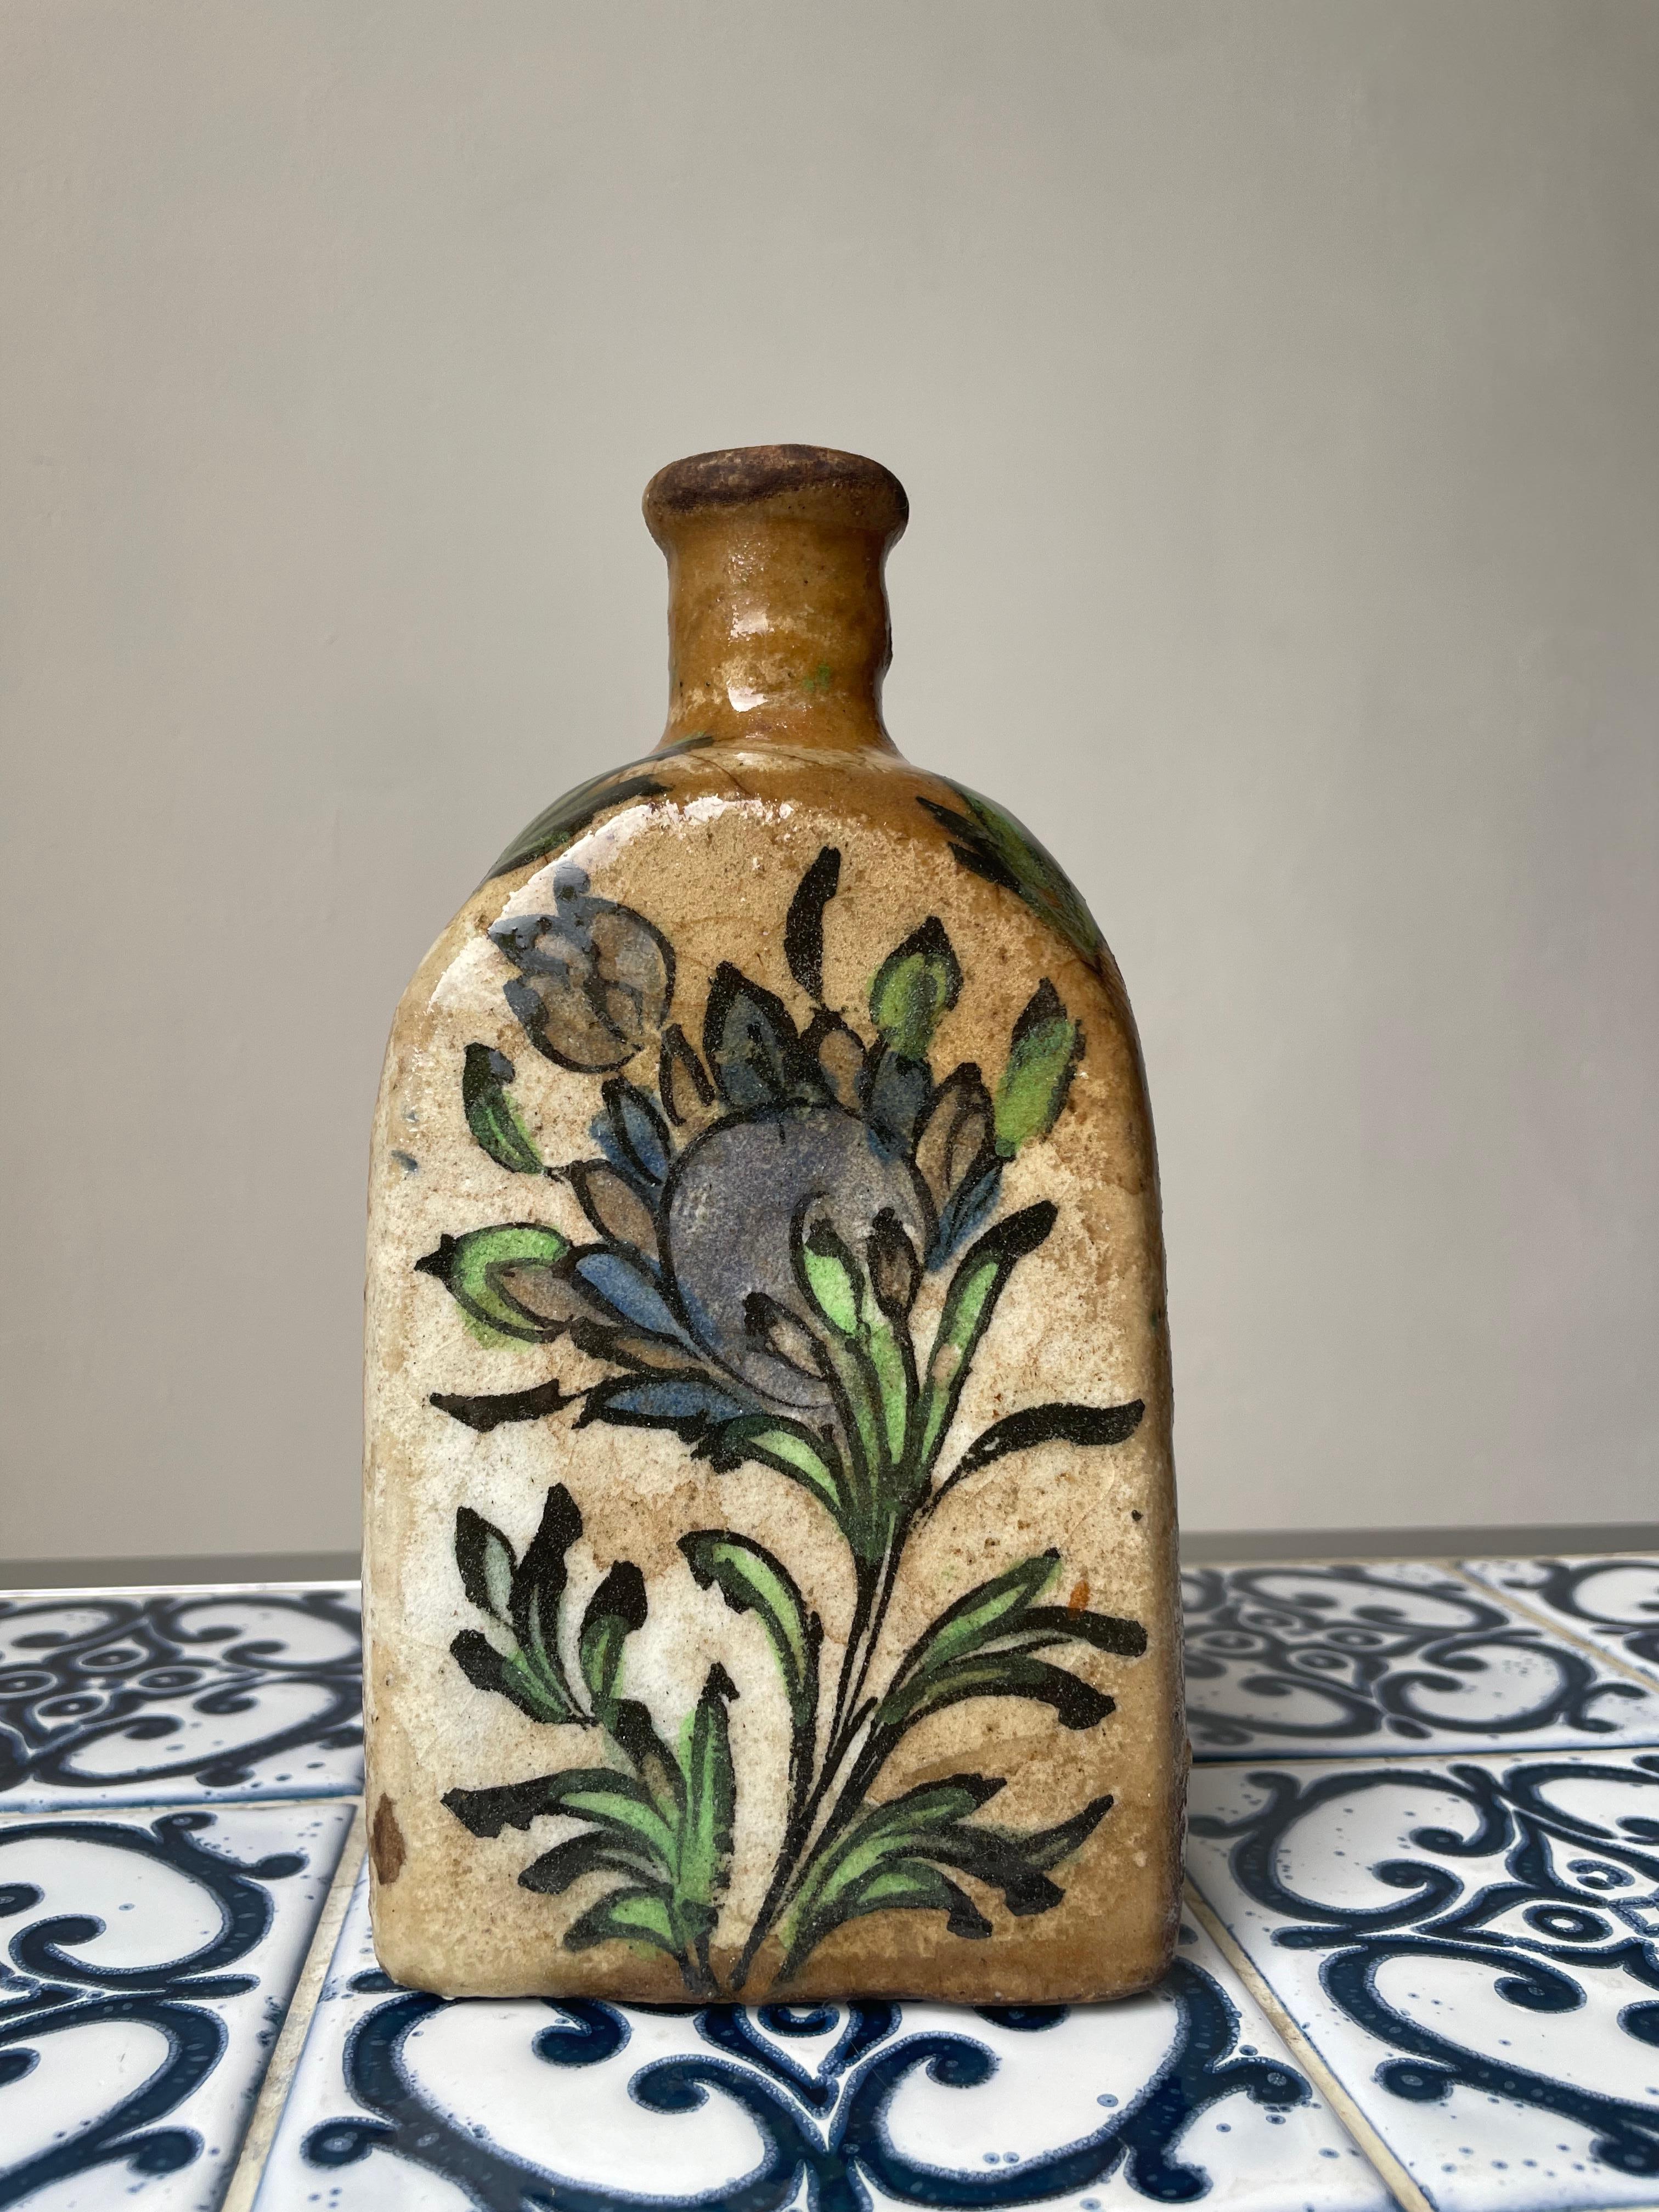 Antike handgefertigte dreieckige Keramikflasche aus dem Nahen Osten mit handgemaltem buntem Dekor und klarer Glasur. Grün und blau gefärbte organische Blumendekorationen auf sandfarbenem Sockel mit Klarglasur. Hergestellt in der Zeit der